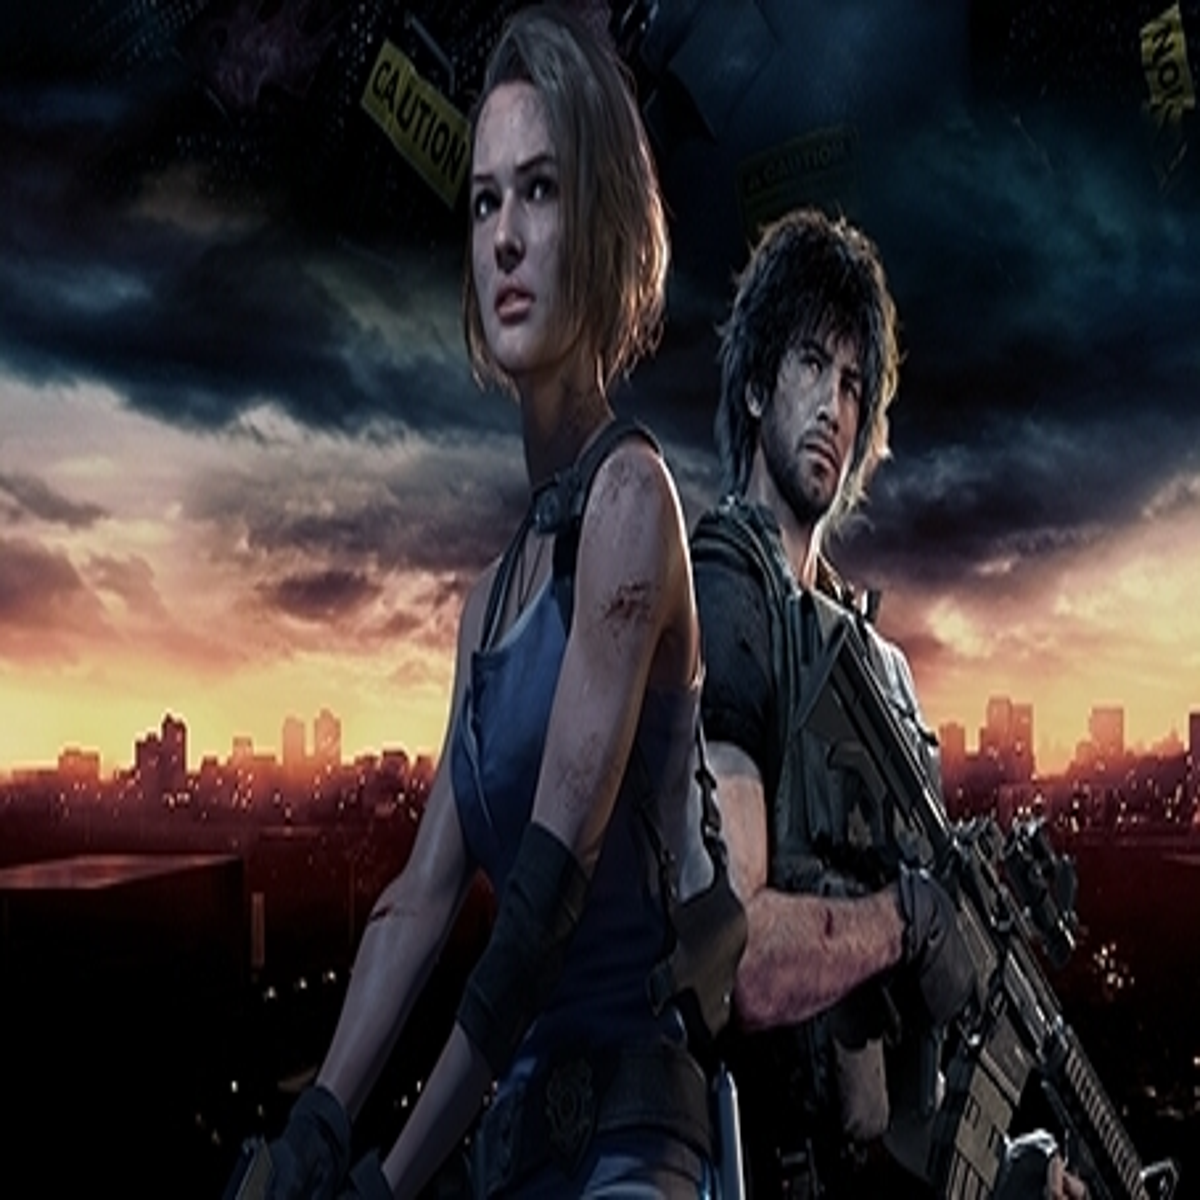 Buy Resident Evil 3 Steam Key PC Game Remake